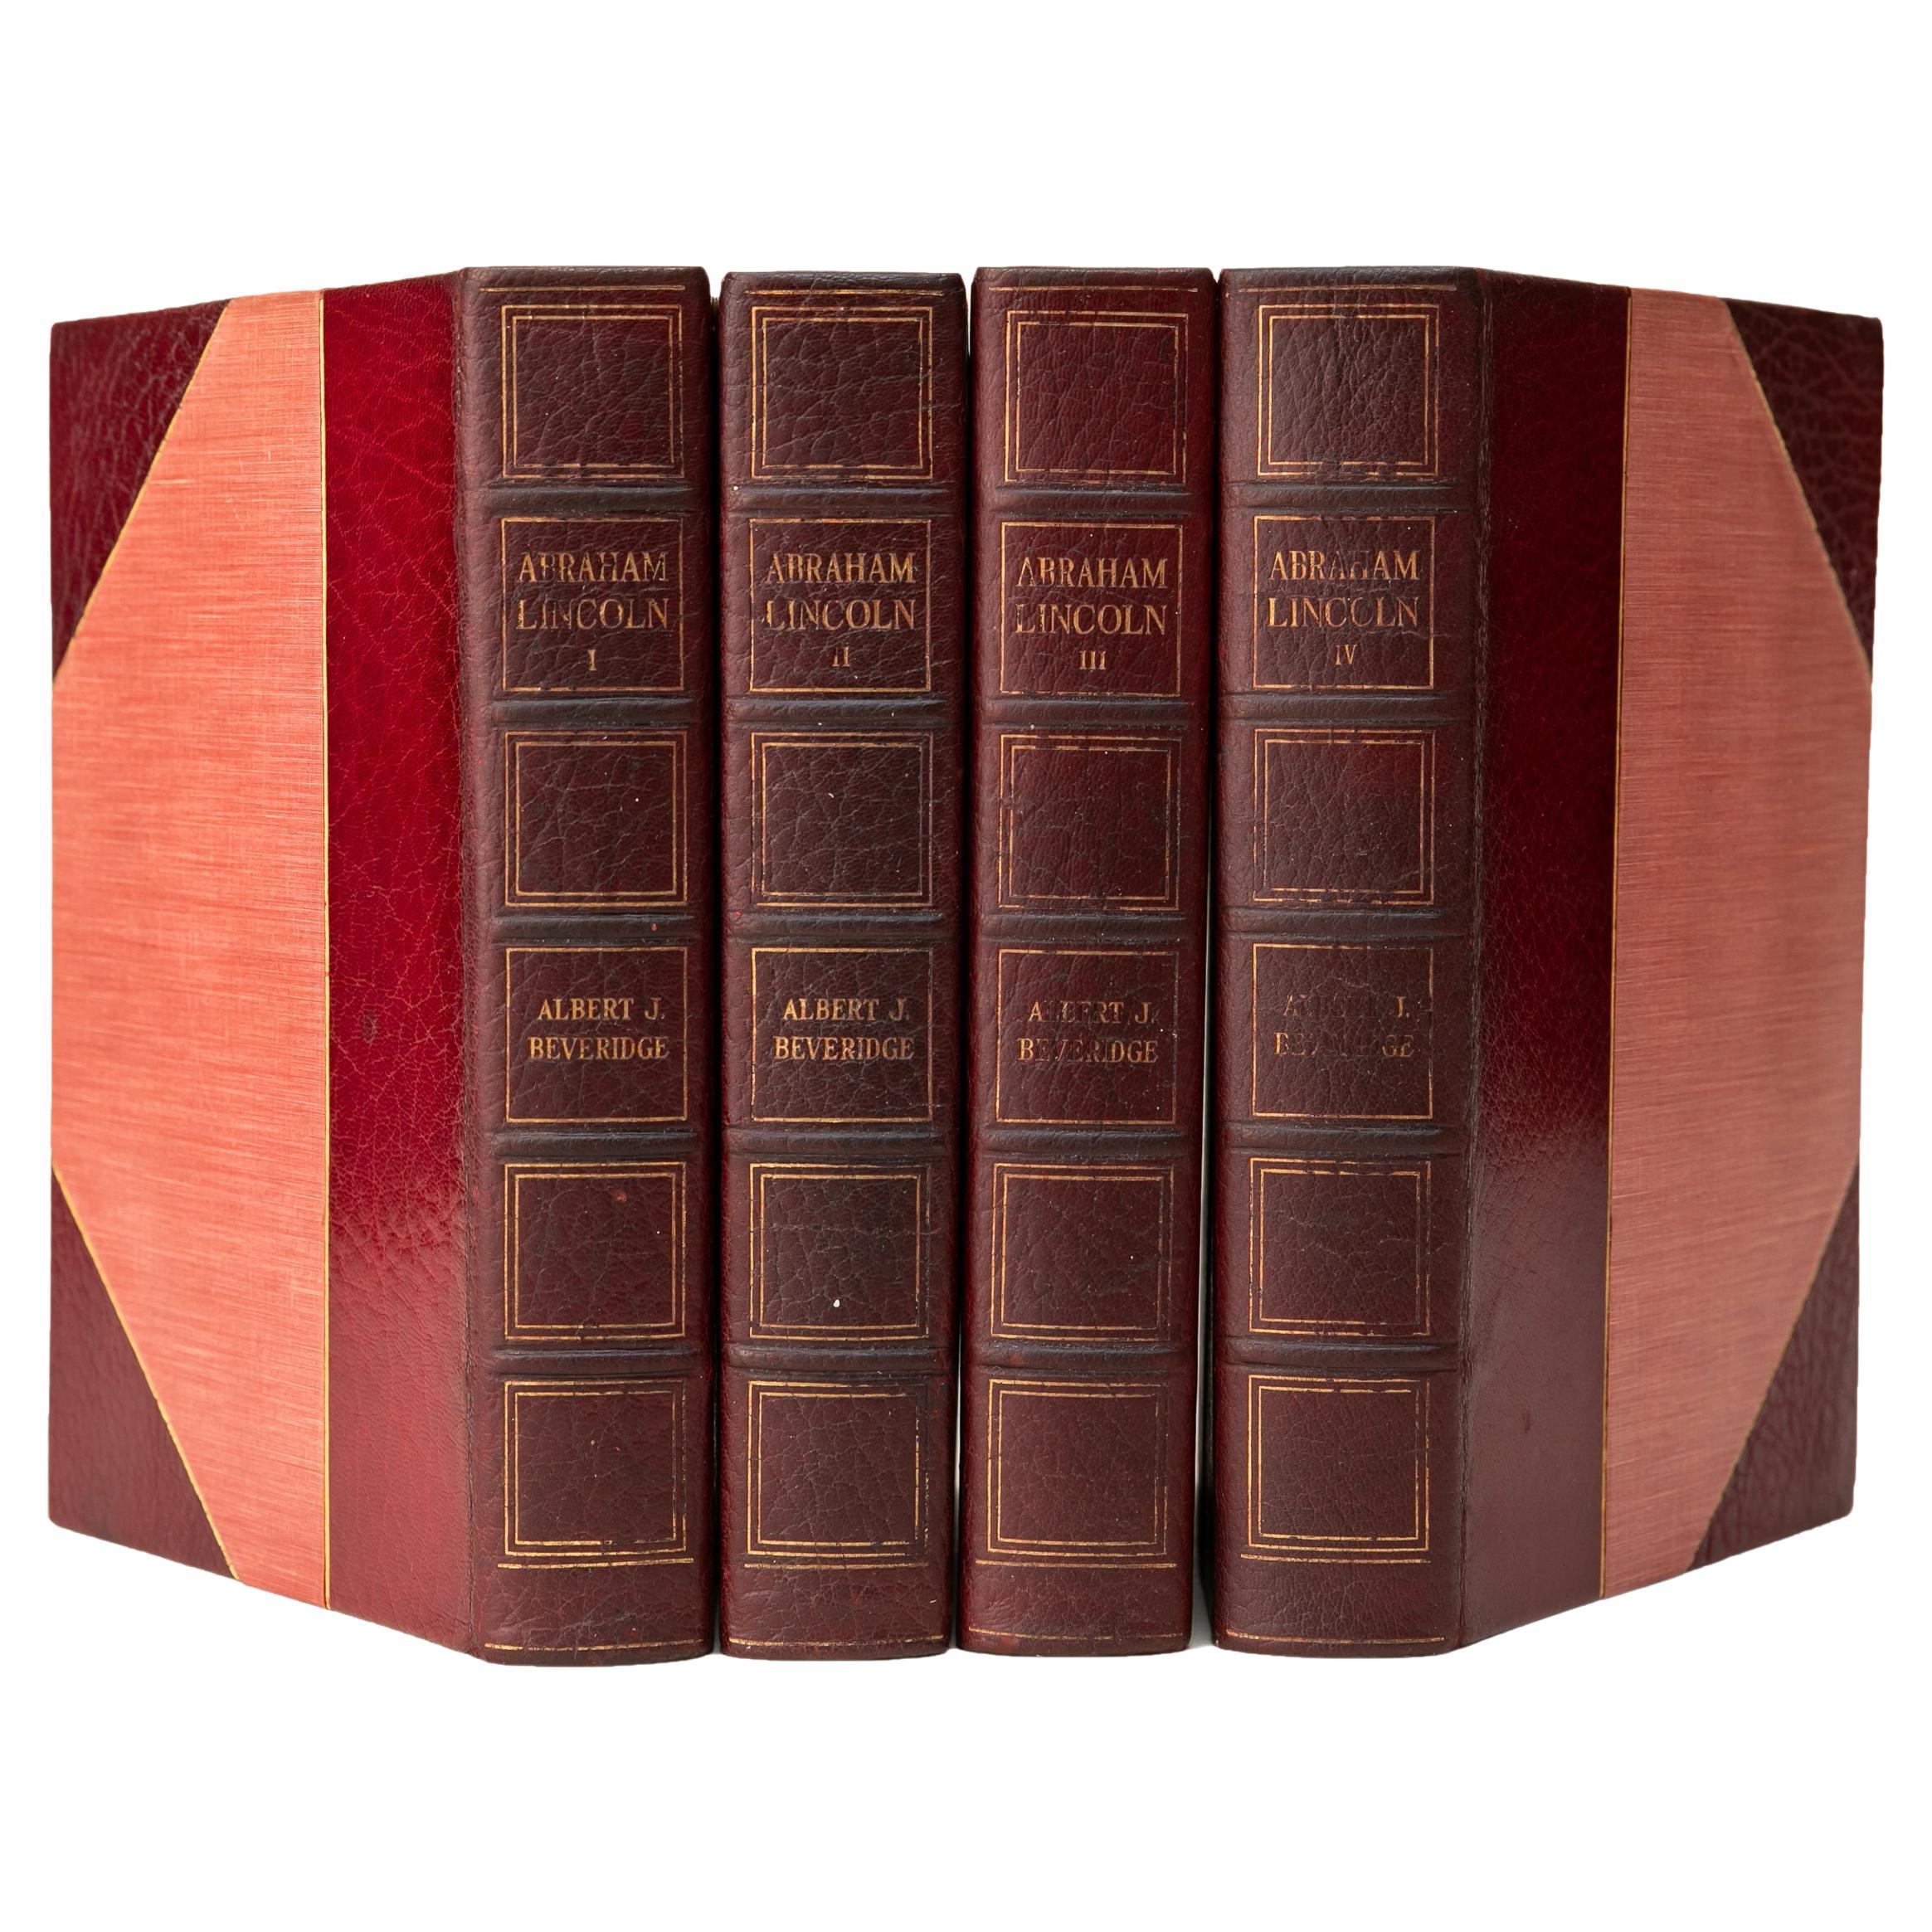 4 Volumes. Albert J. Beveridge, Abraham Lincoln. For Sale